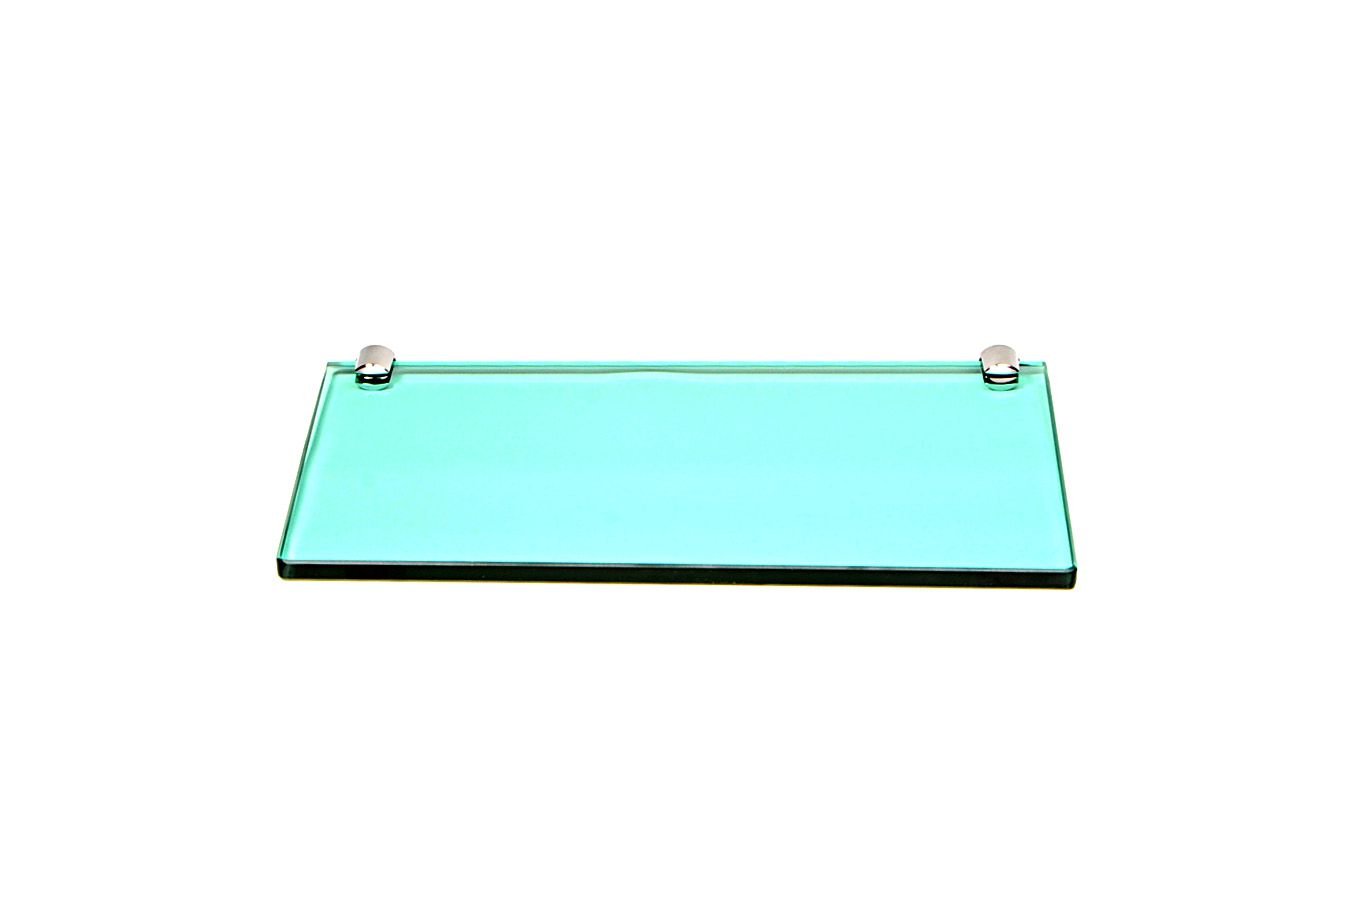 Porta Shampoo Reto em Vidro Verde Lapidado - Aquabox - 30cmx14cmx10mm